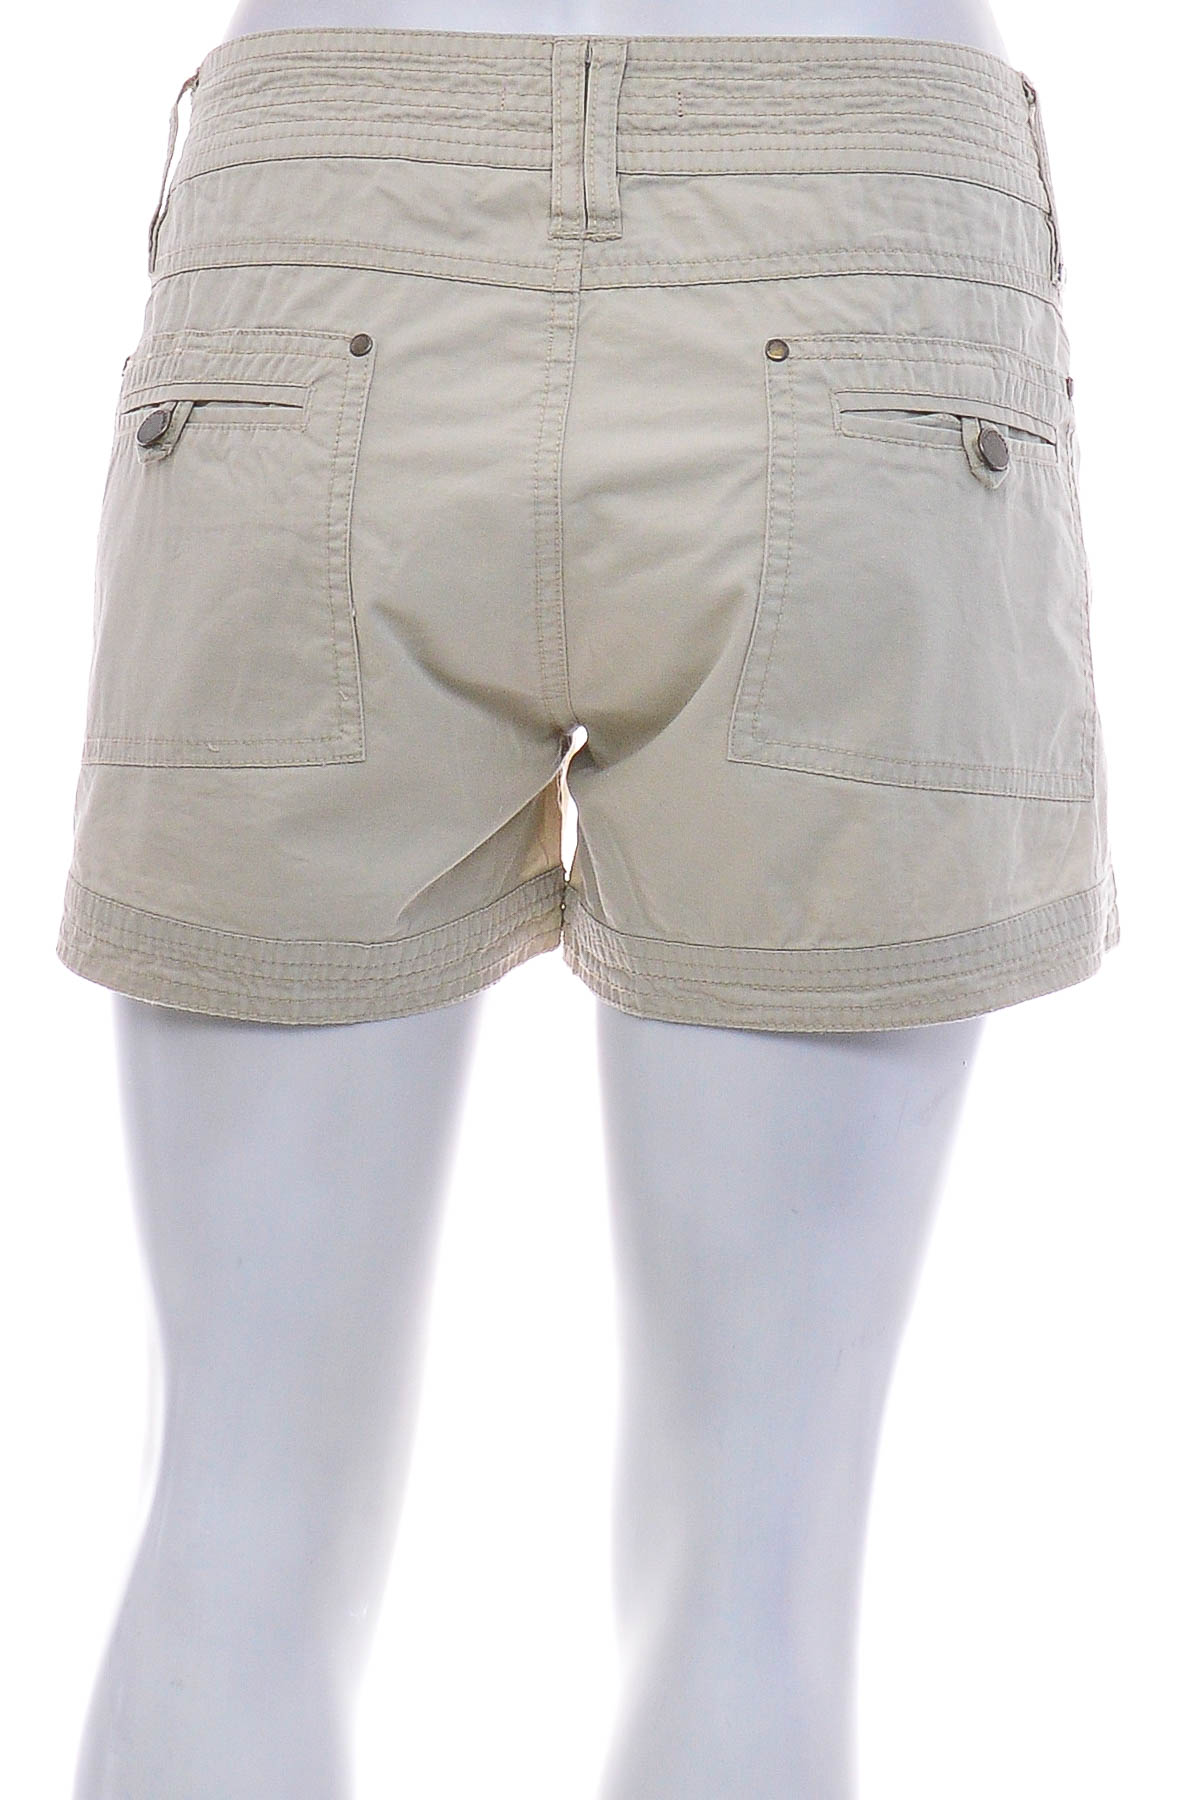 Female shorts - Groggy by jbc - 1